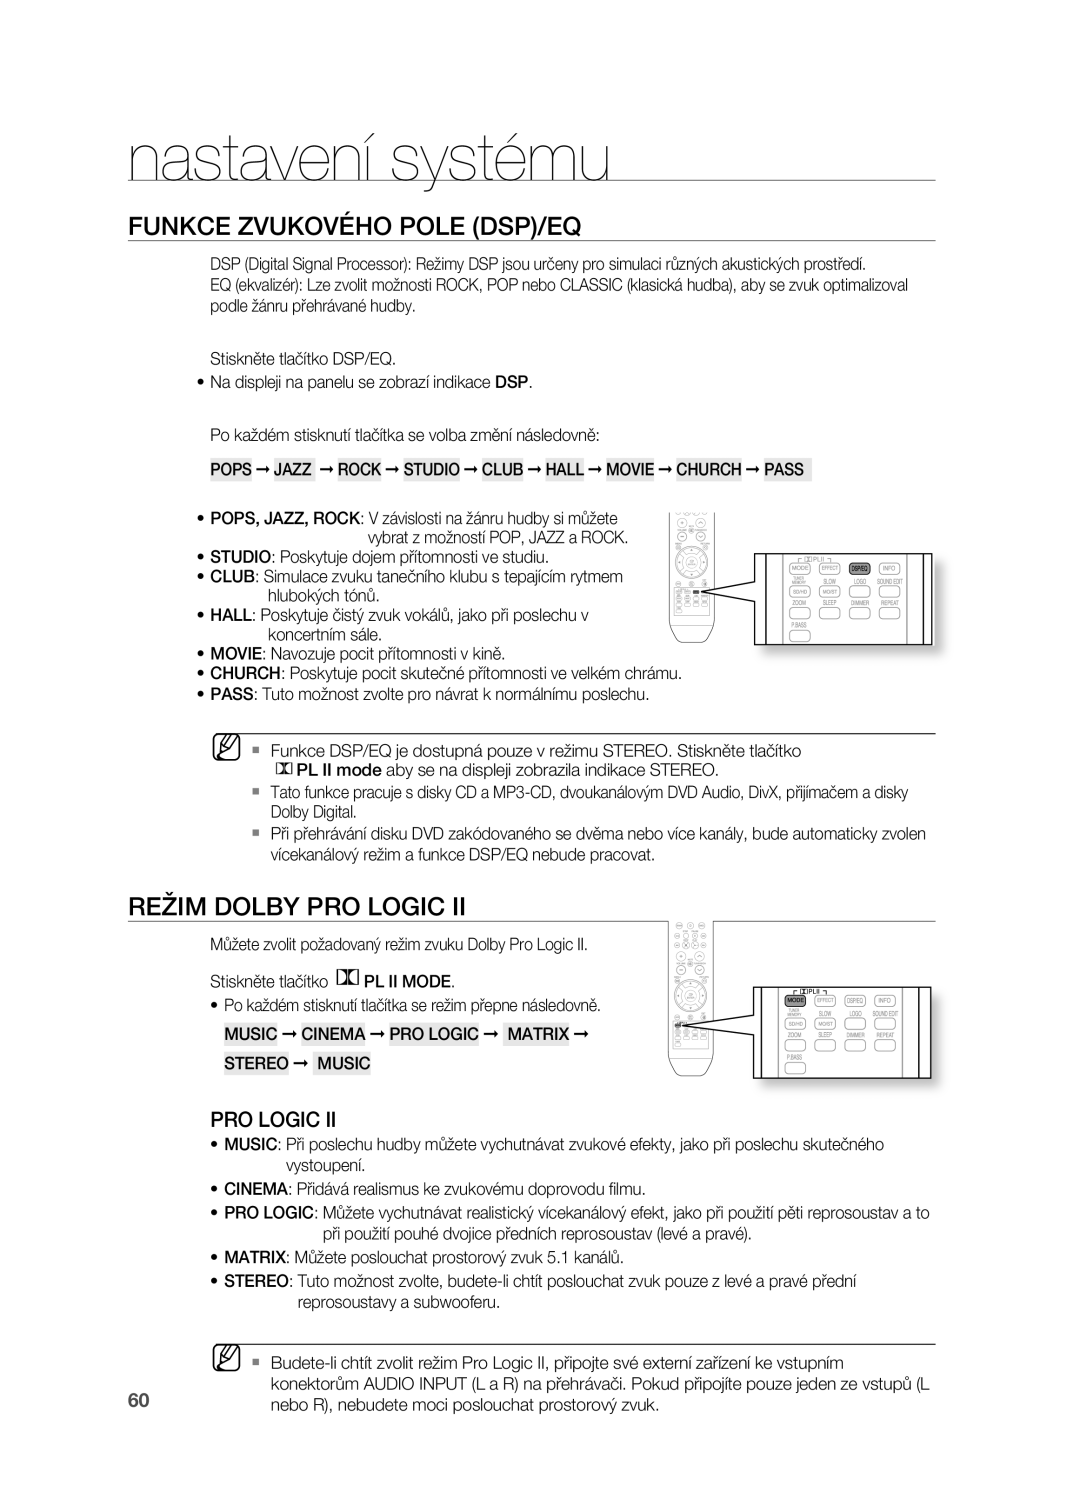 Samsung HT-Z310R/EDC Funkce ZVUKOVéHO Pole DSP/EQ, REžIM Dolby PrO Logic, Nebo R, nebudete moci poslouchat prostorový zvuk 